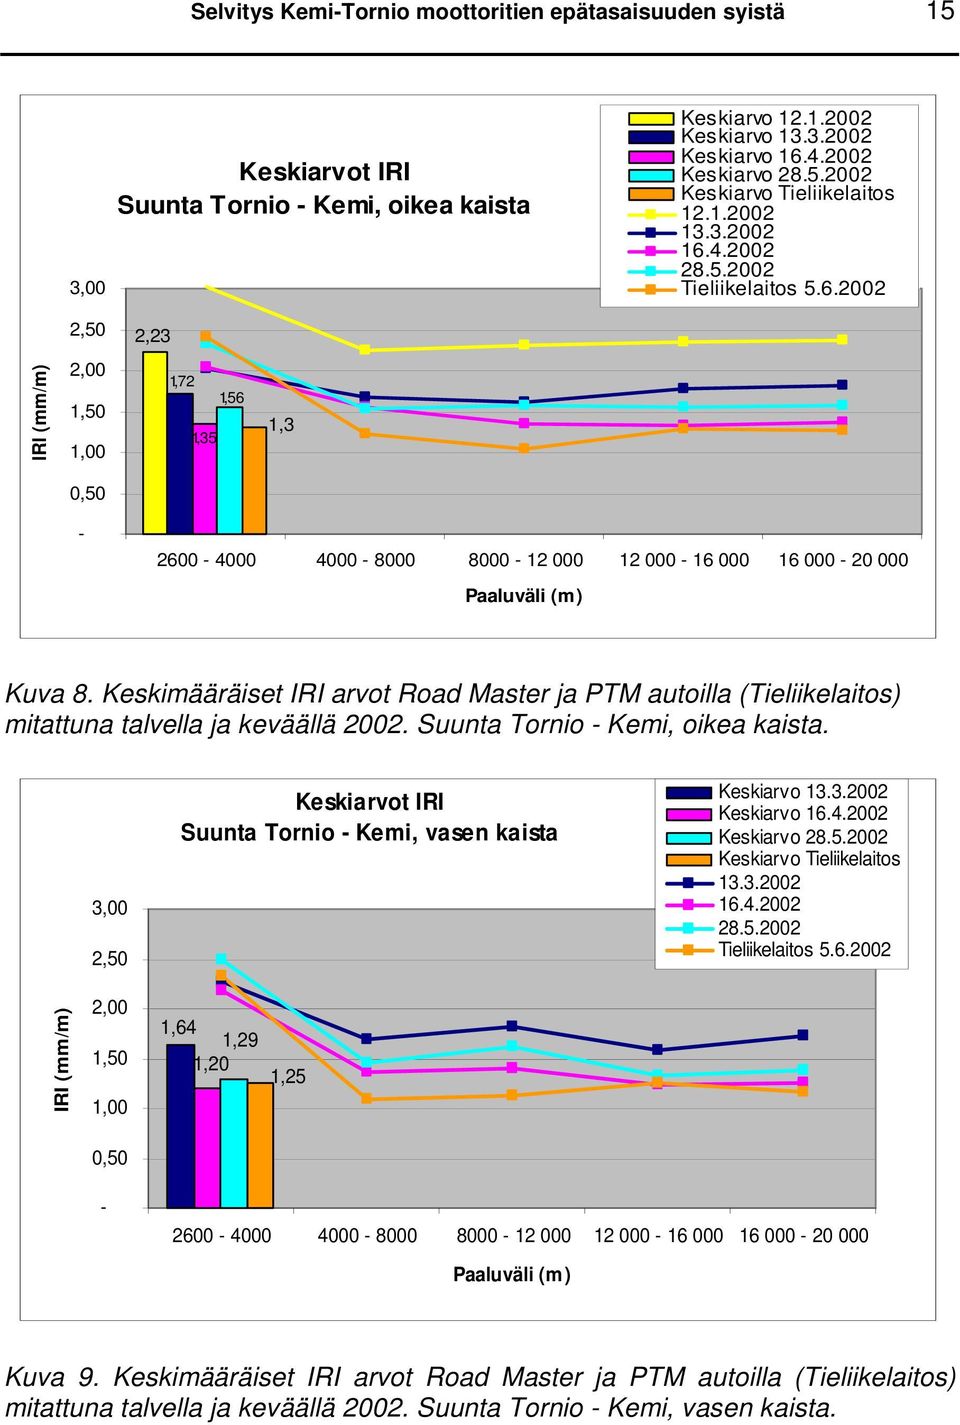 Keskimääräiset IRI arvot Road Master ja PTM autoilla (Tieliikelaitos) mitattuna talvella ja keväällä 2002. Suunta Tornio - Kemi, oikea kaista.